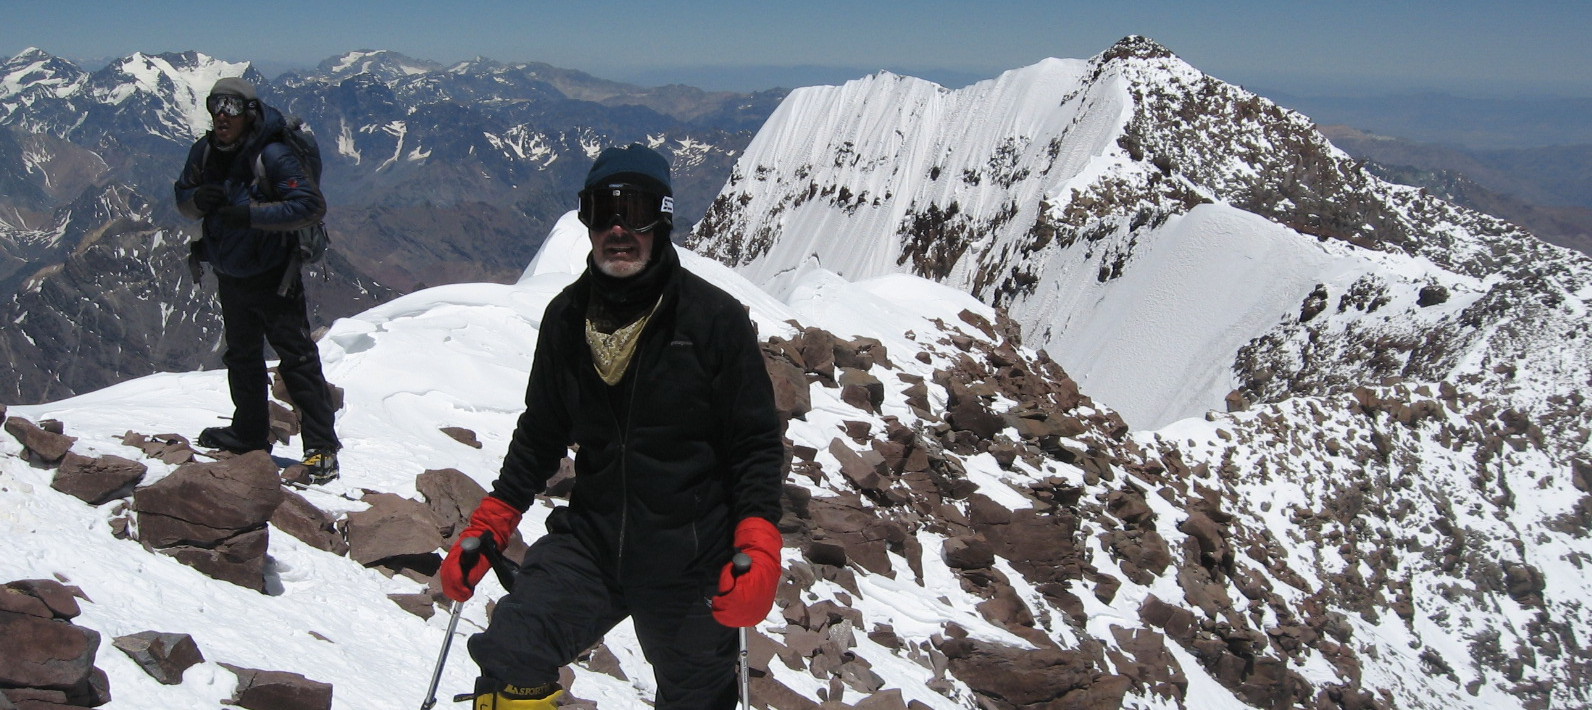 Filo del guananco a pasos de la cumbre de Aconcagua 6.962m